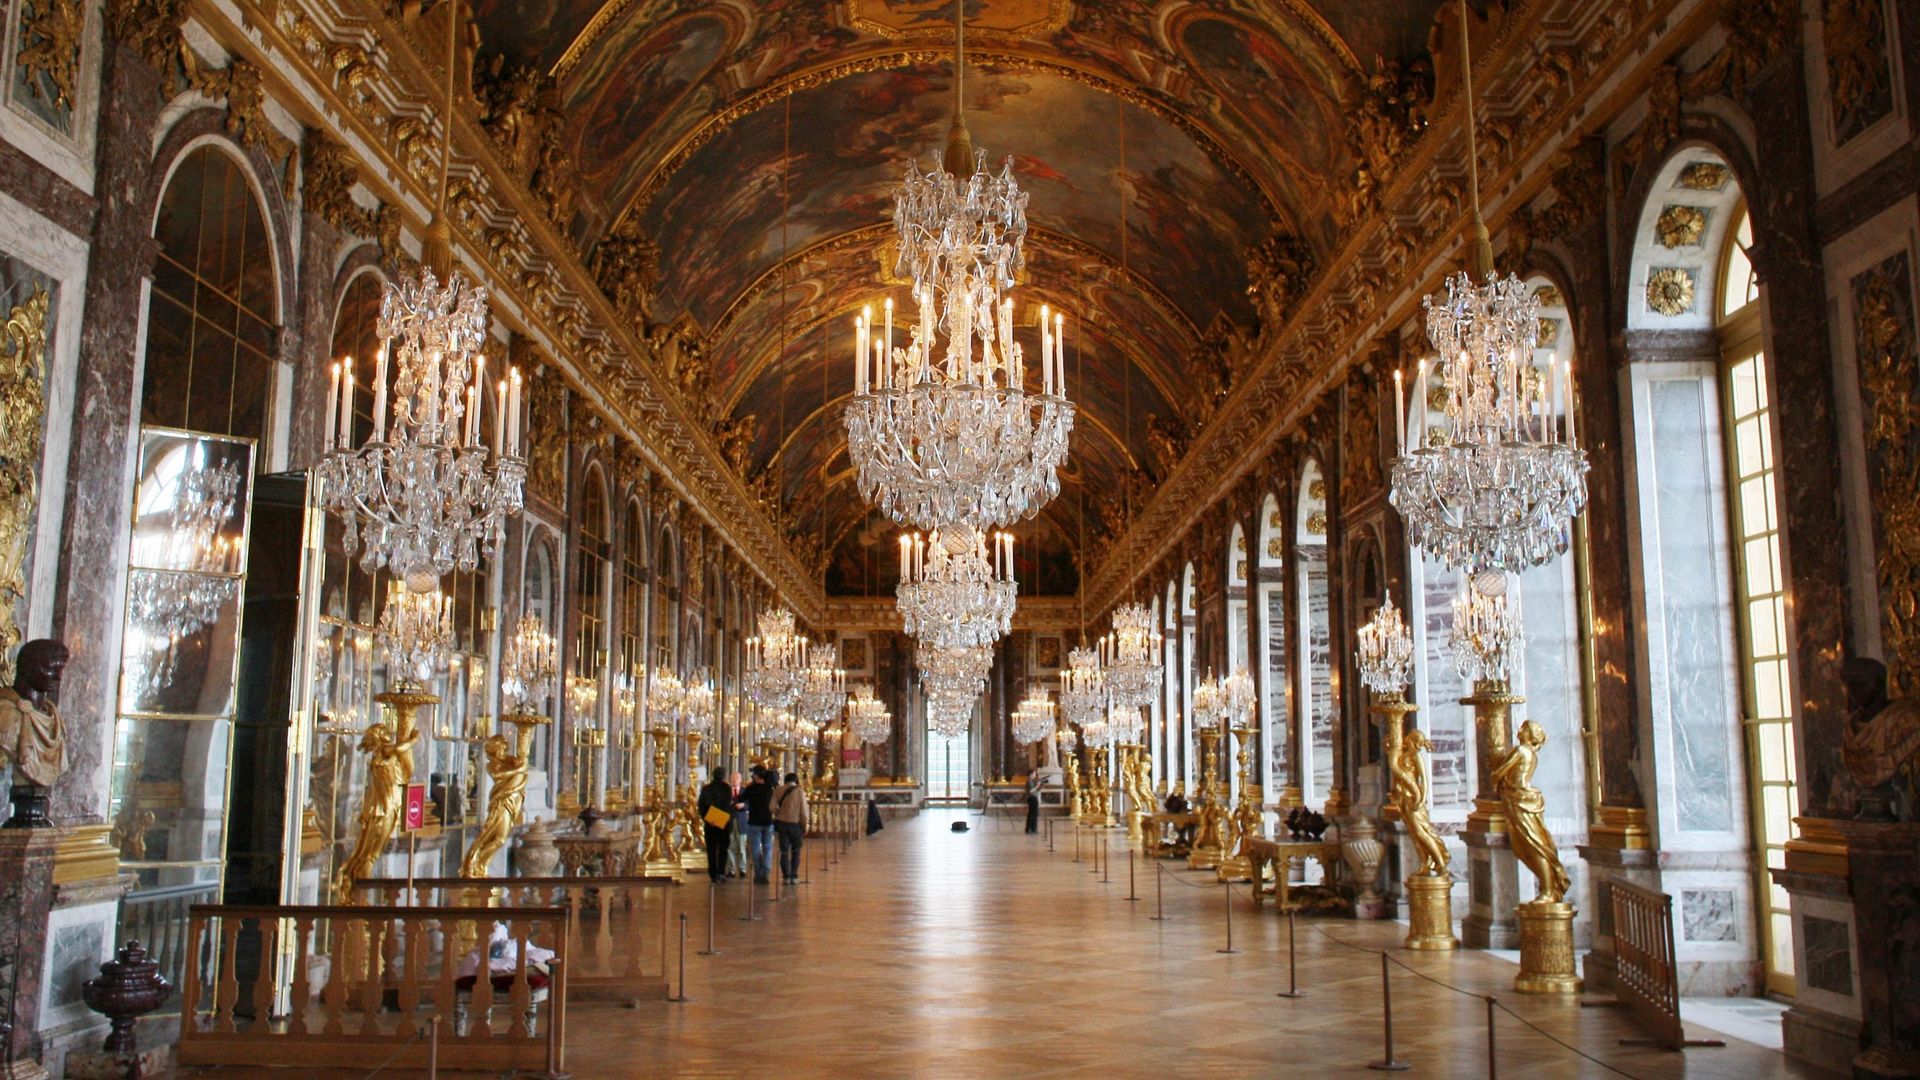 Galerie des glaces, Versailles